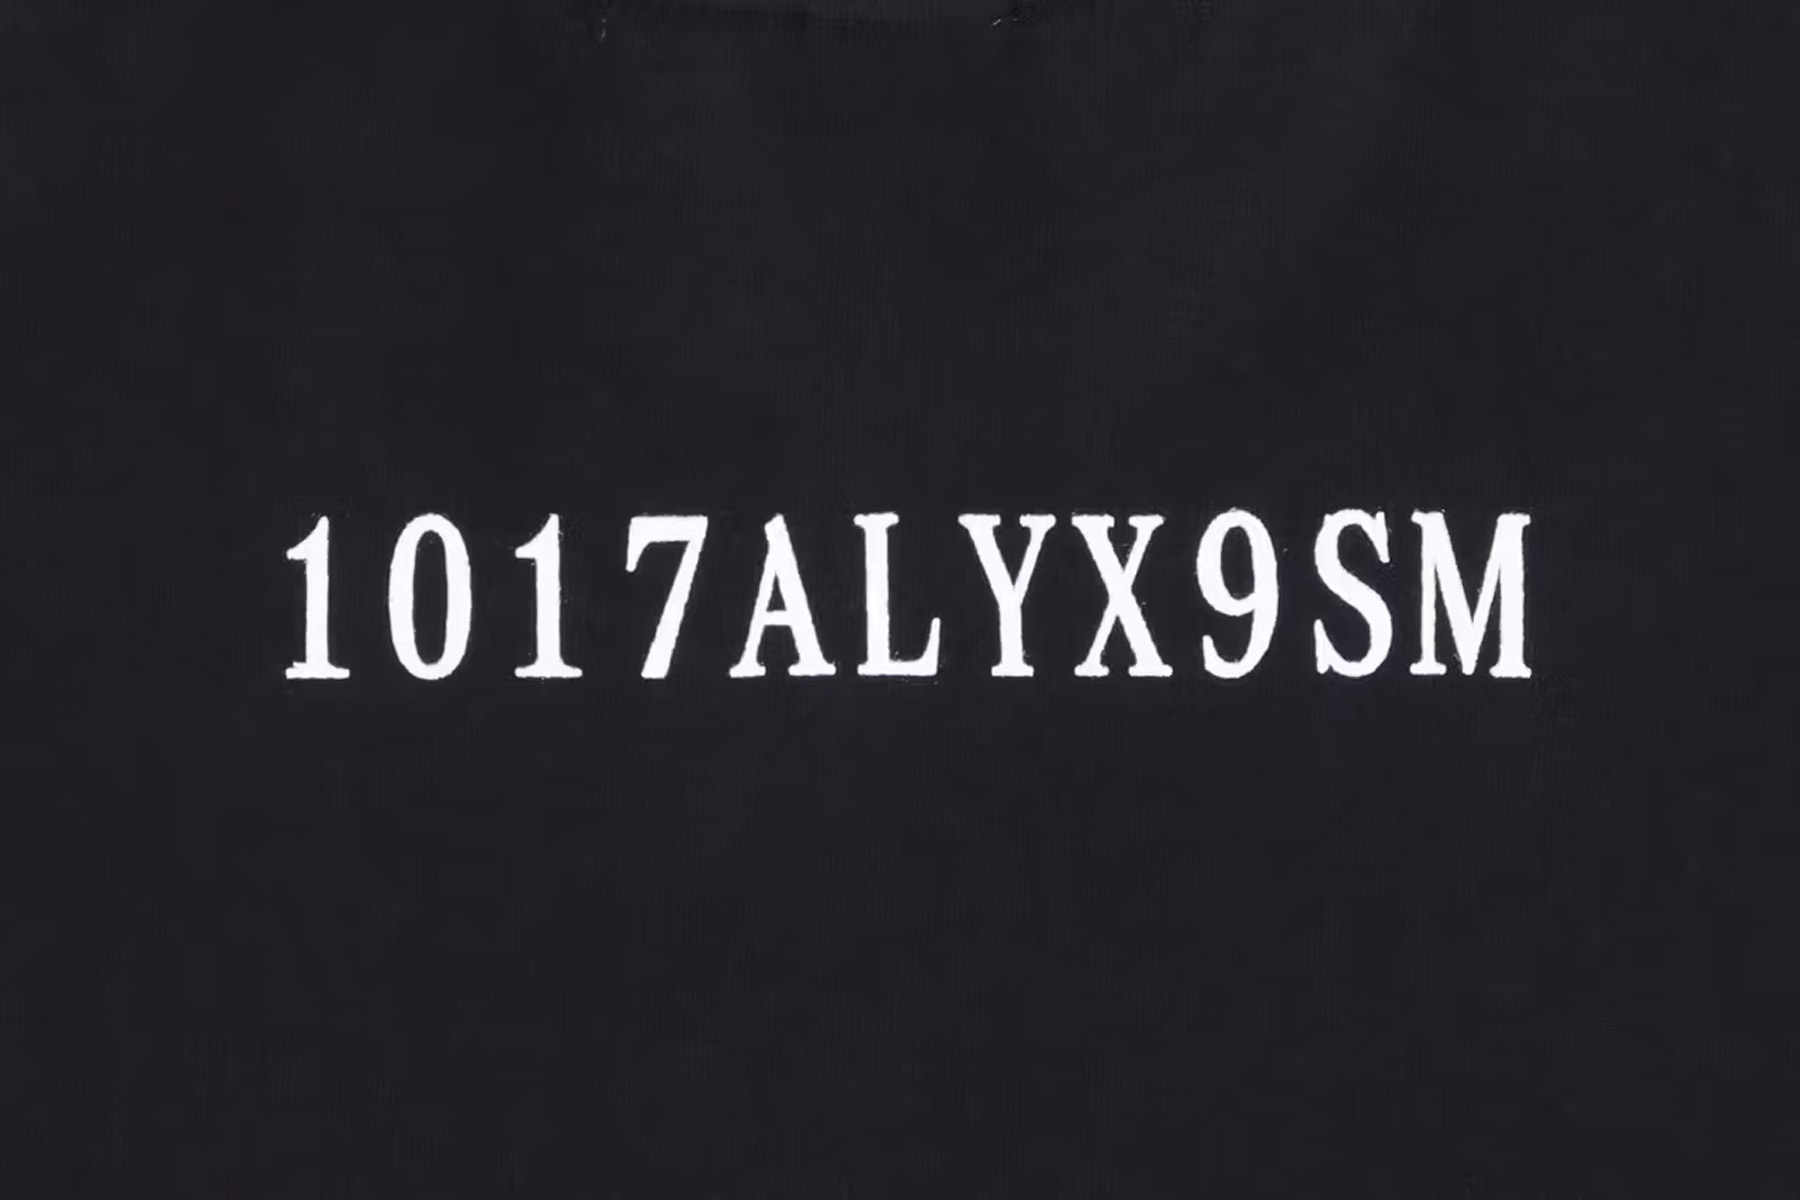 1017 ALYX 9SM 正式推出專輯《1017 ALYX 9SM COMPILATION VOL. 1》周邊服飾